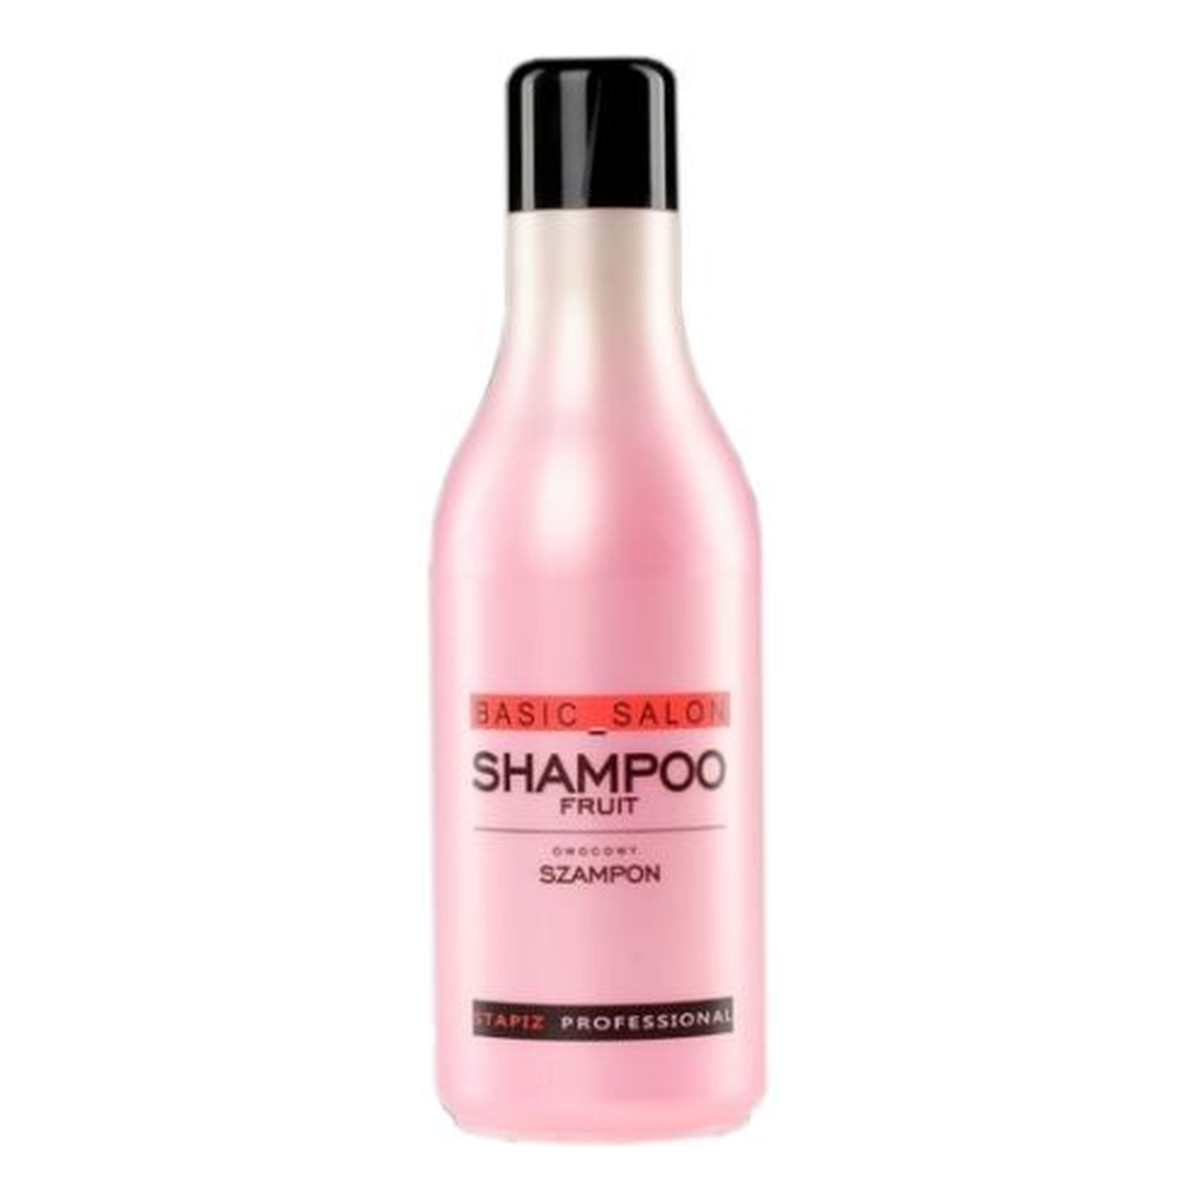 Stapiz Professional Fruit Shampoo Szampon owocowy do włosów 1000ml